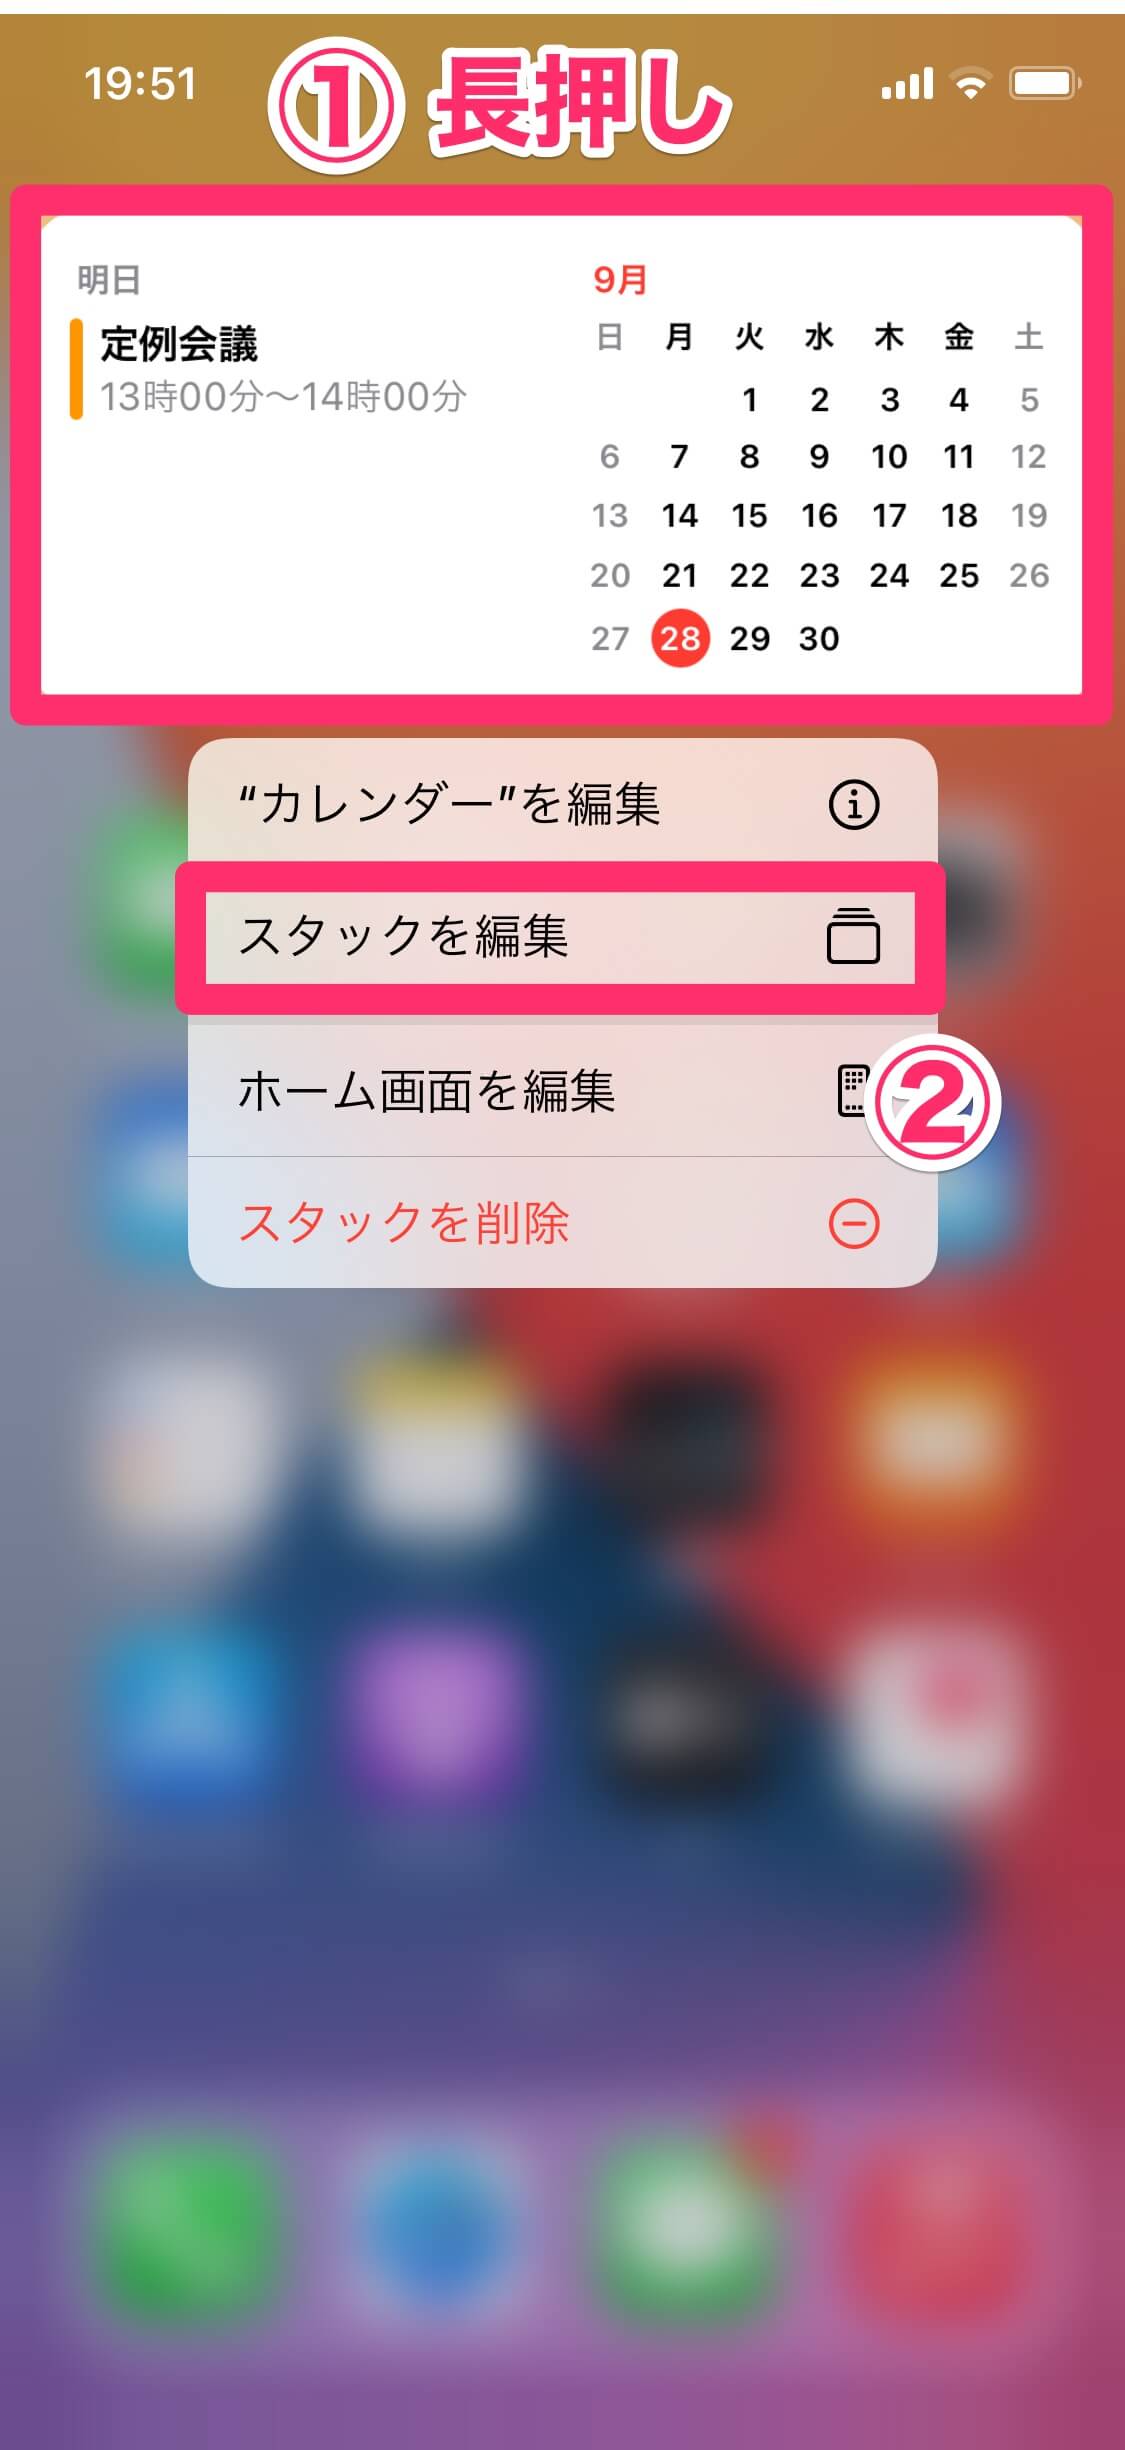 【iOS 14】新機能「ウィジェット」の基本。ホーム画面に天気予報やカレンダーの予定を配置できる